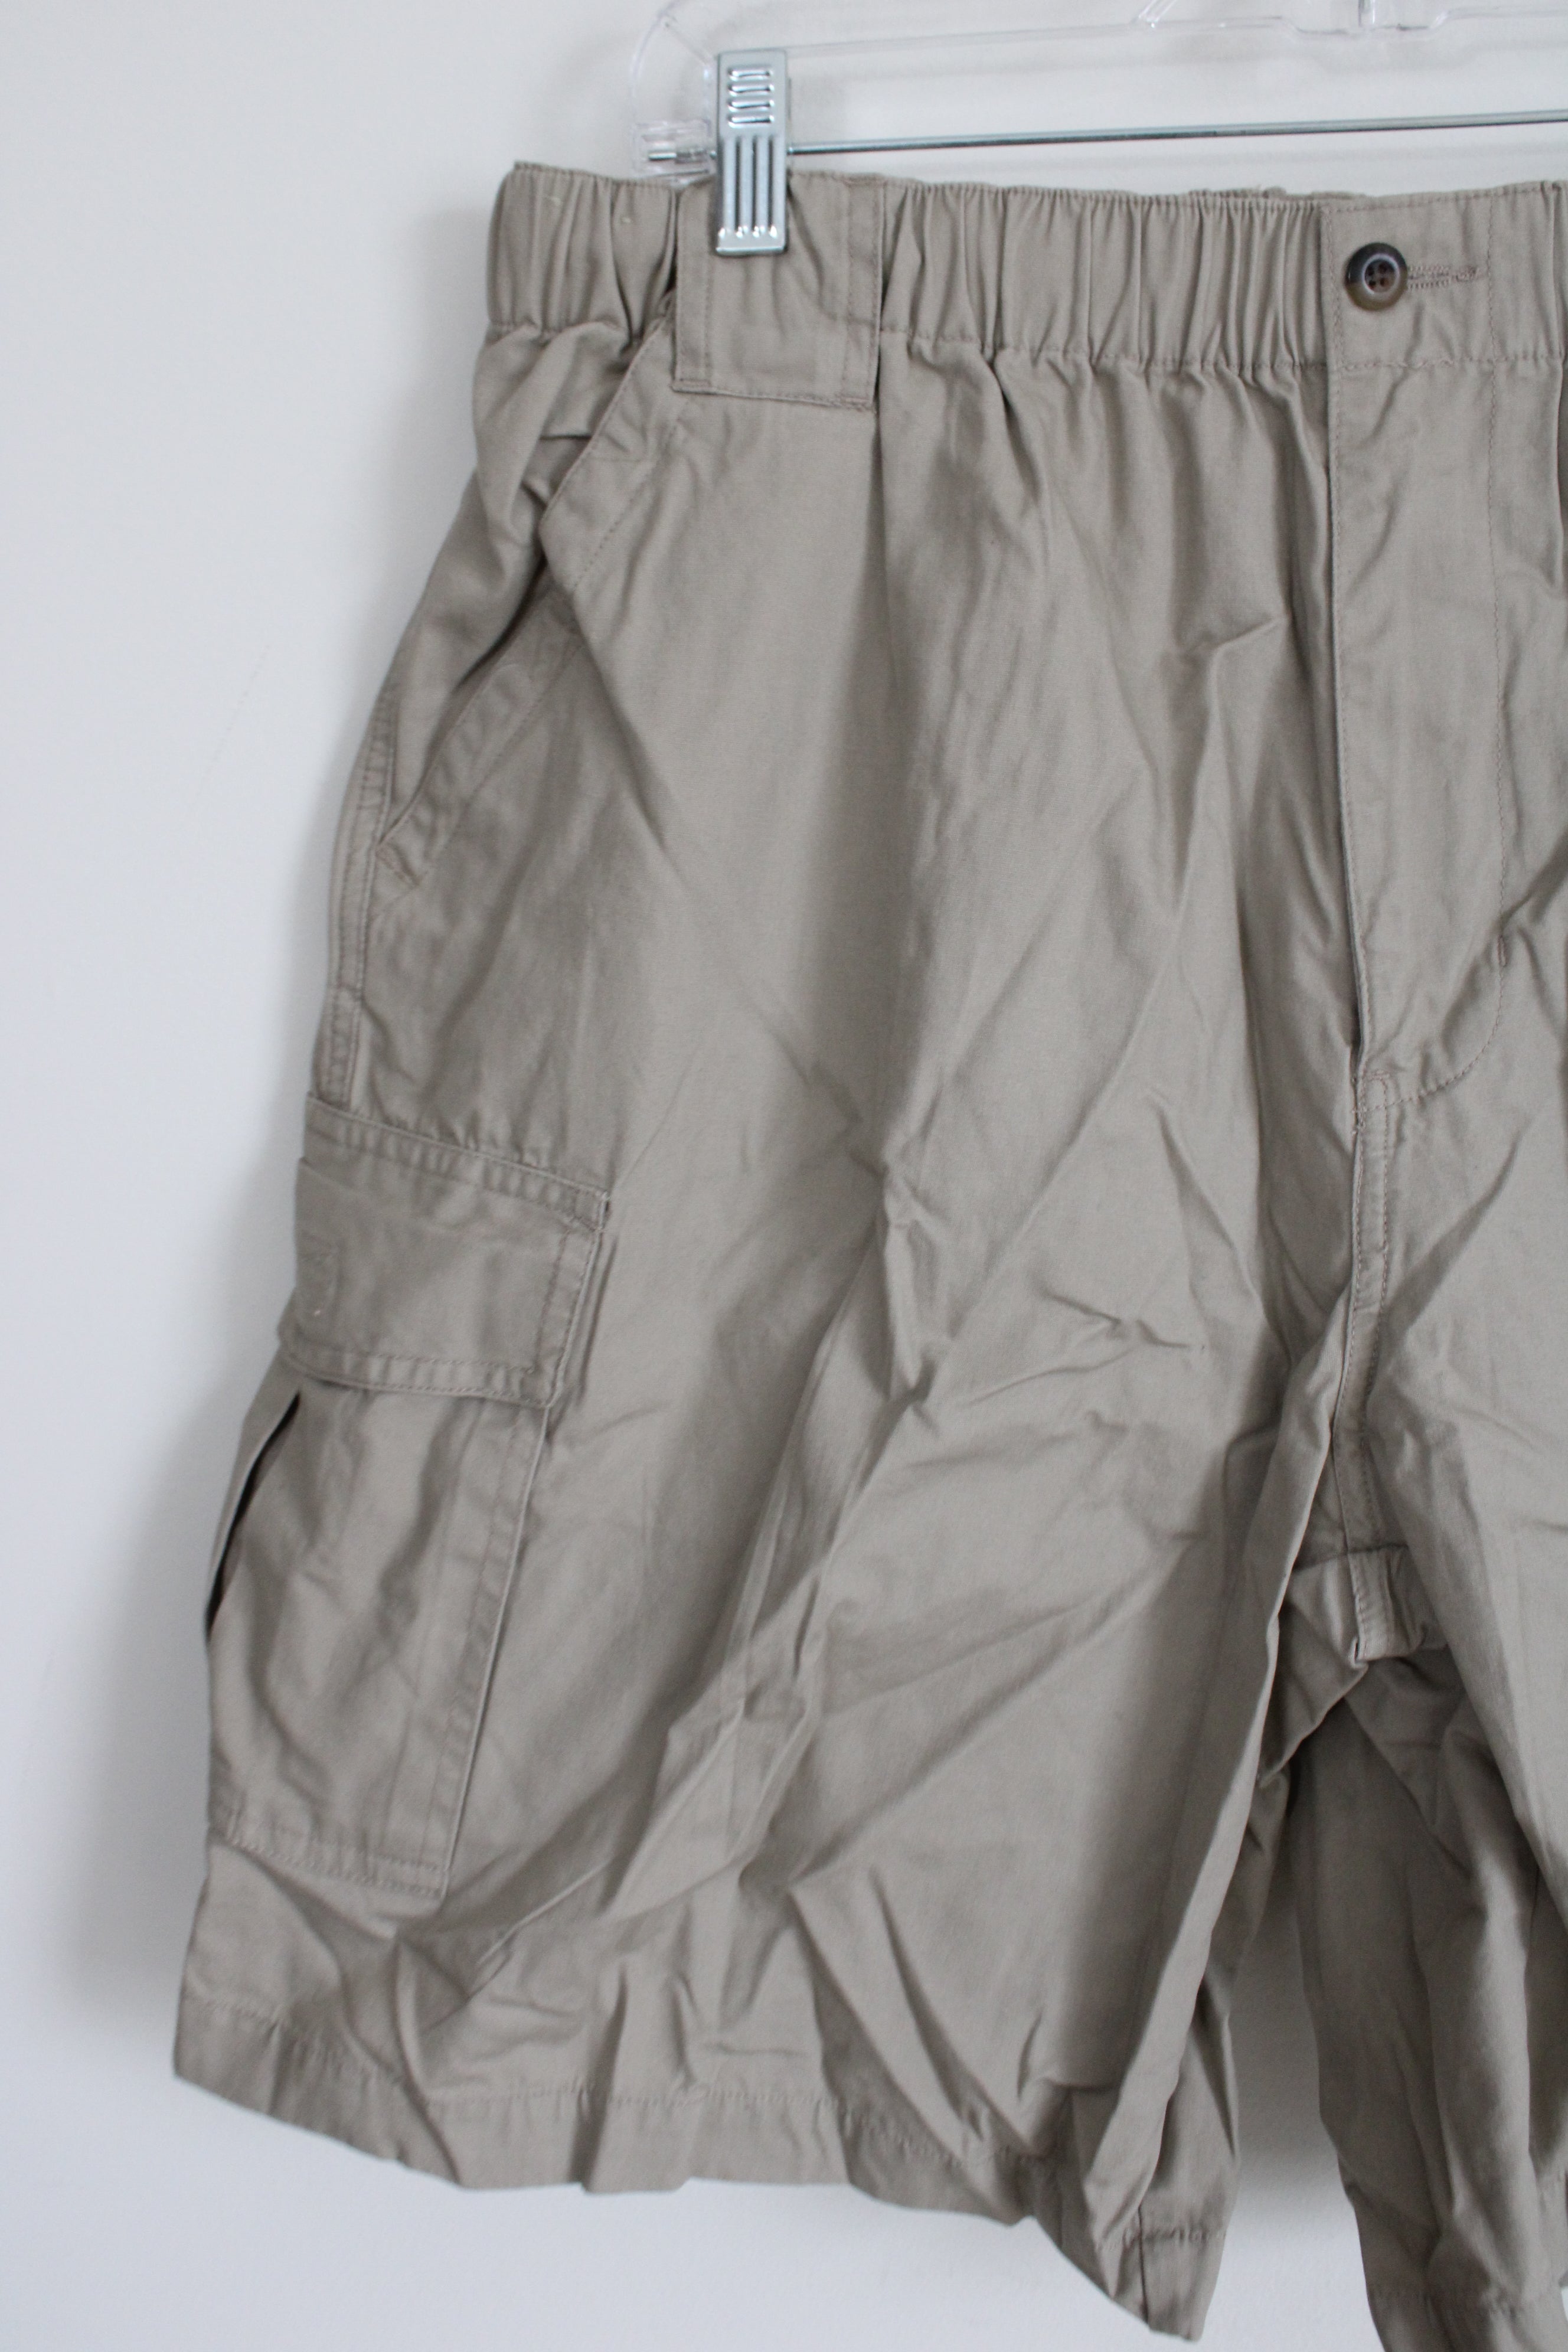 Cherokee Tan Cargo Shorts | 38